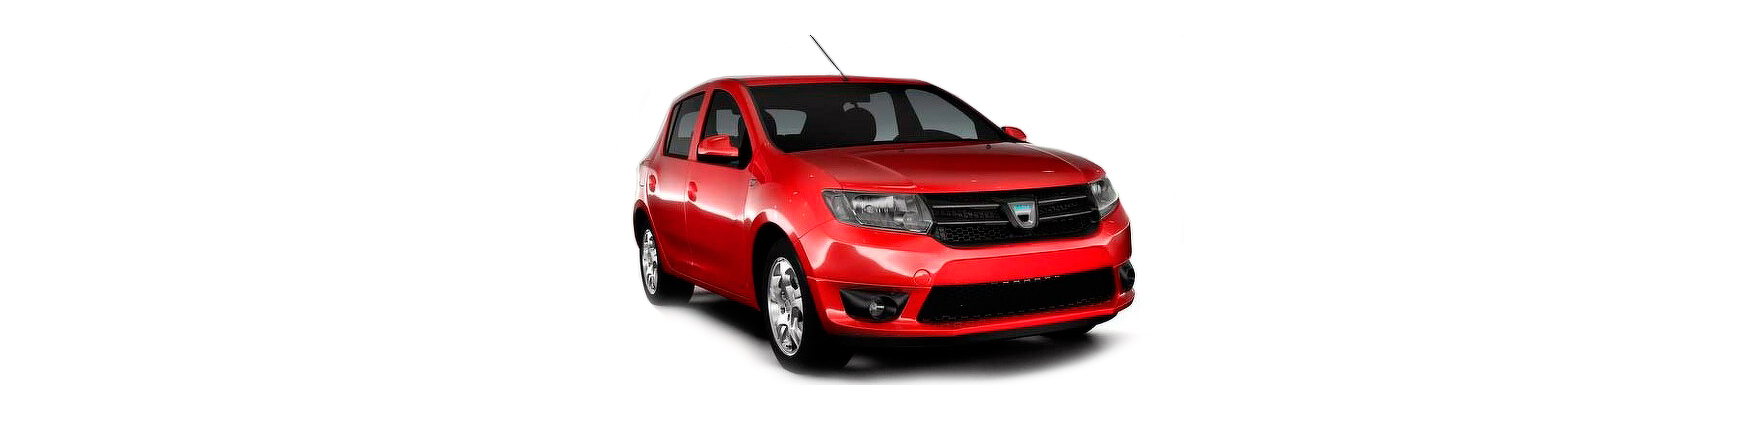 Piezas y Recambios de Dacia Sandero de 2012 a 2020 | Veramauto.es